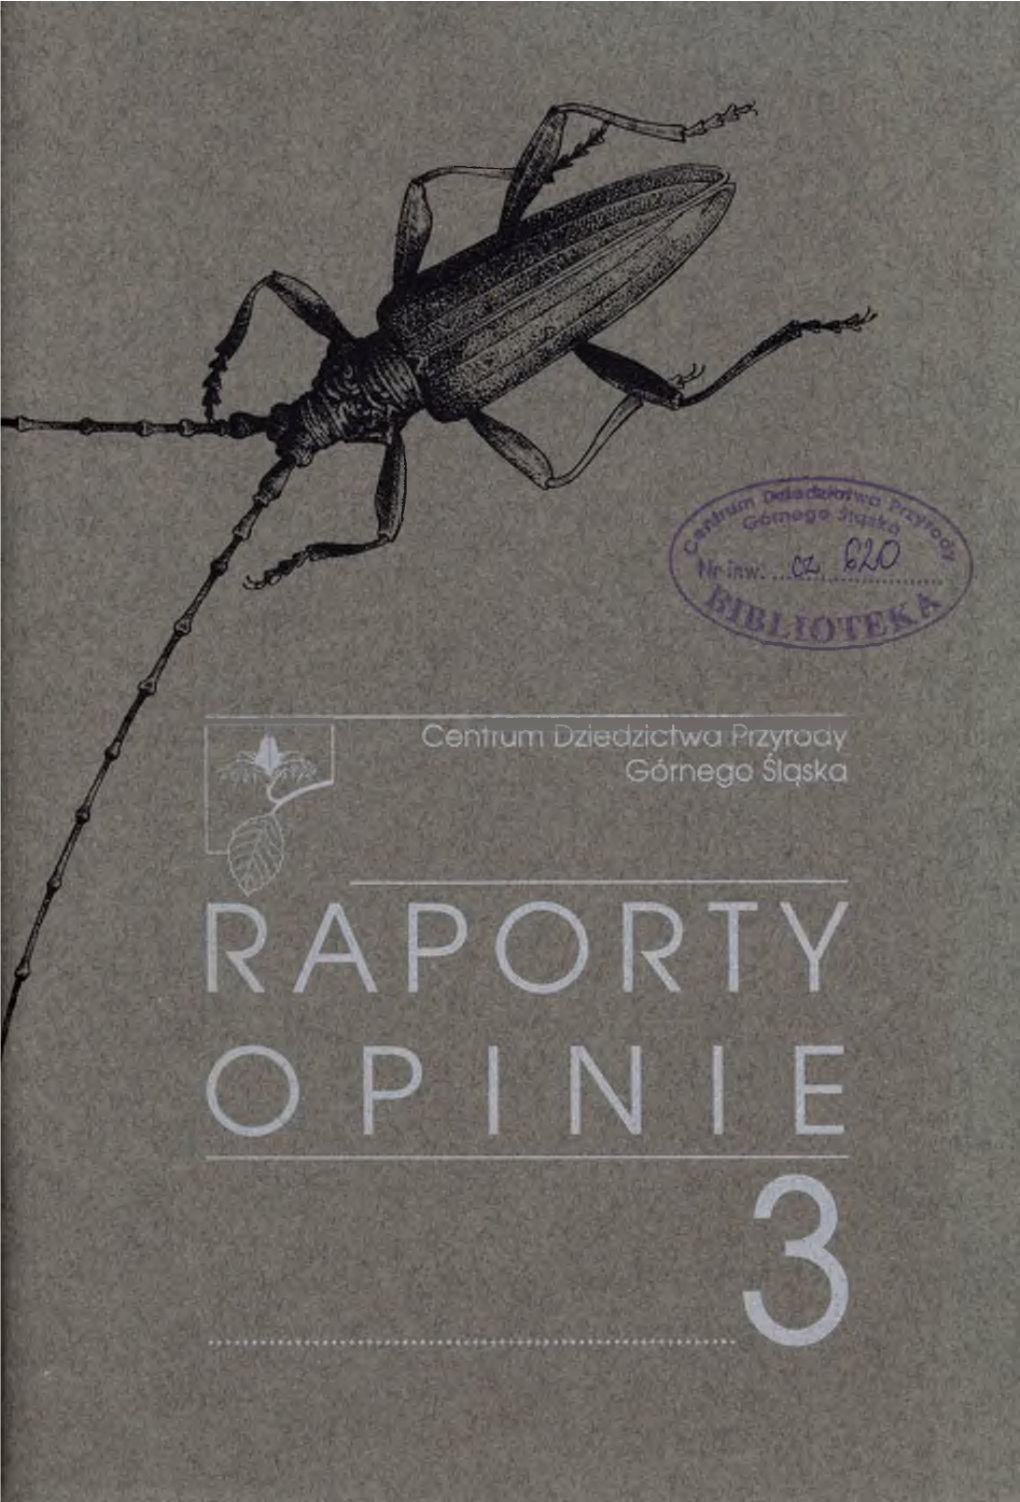 Coleoptera) Górnego Śląska Str